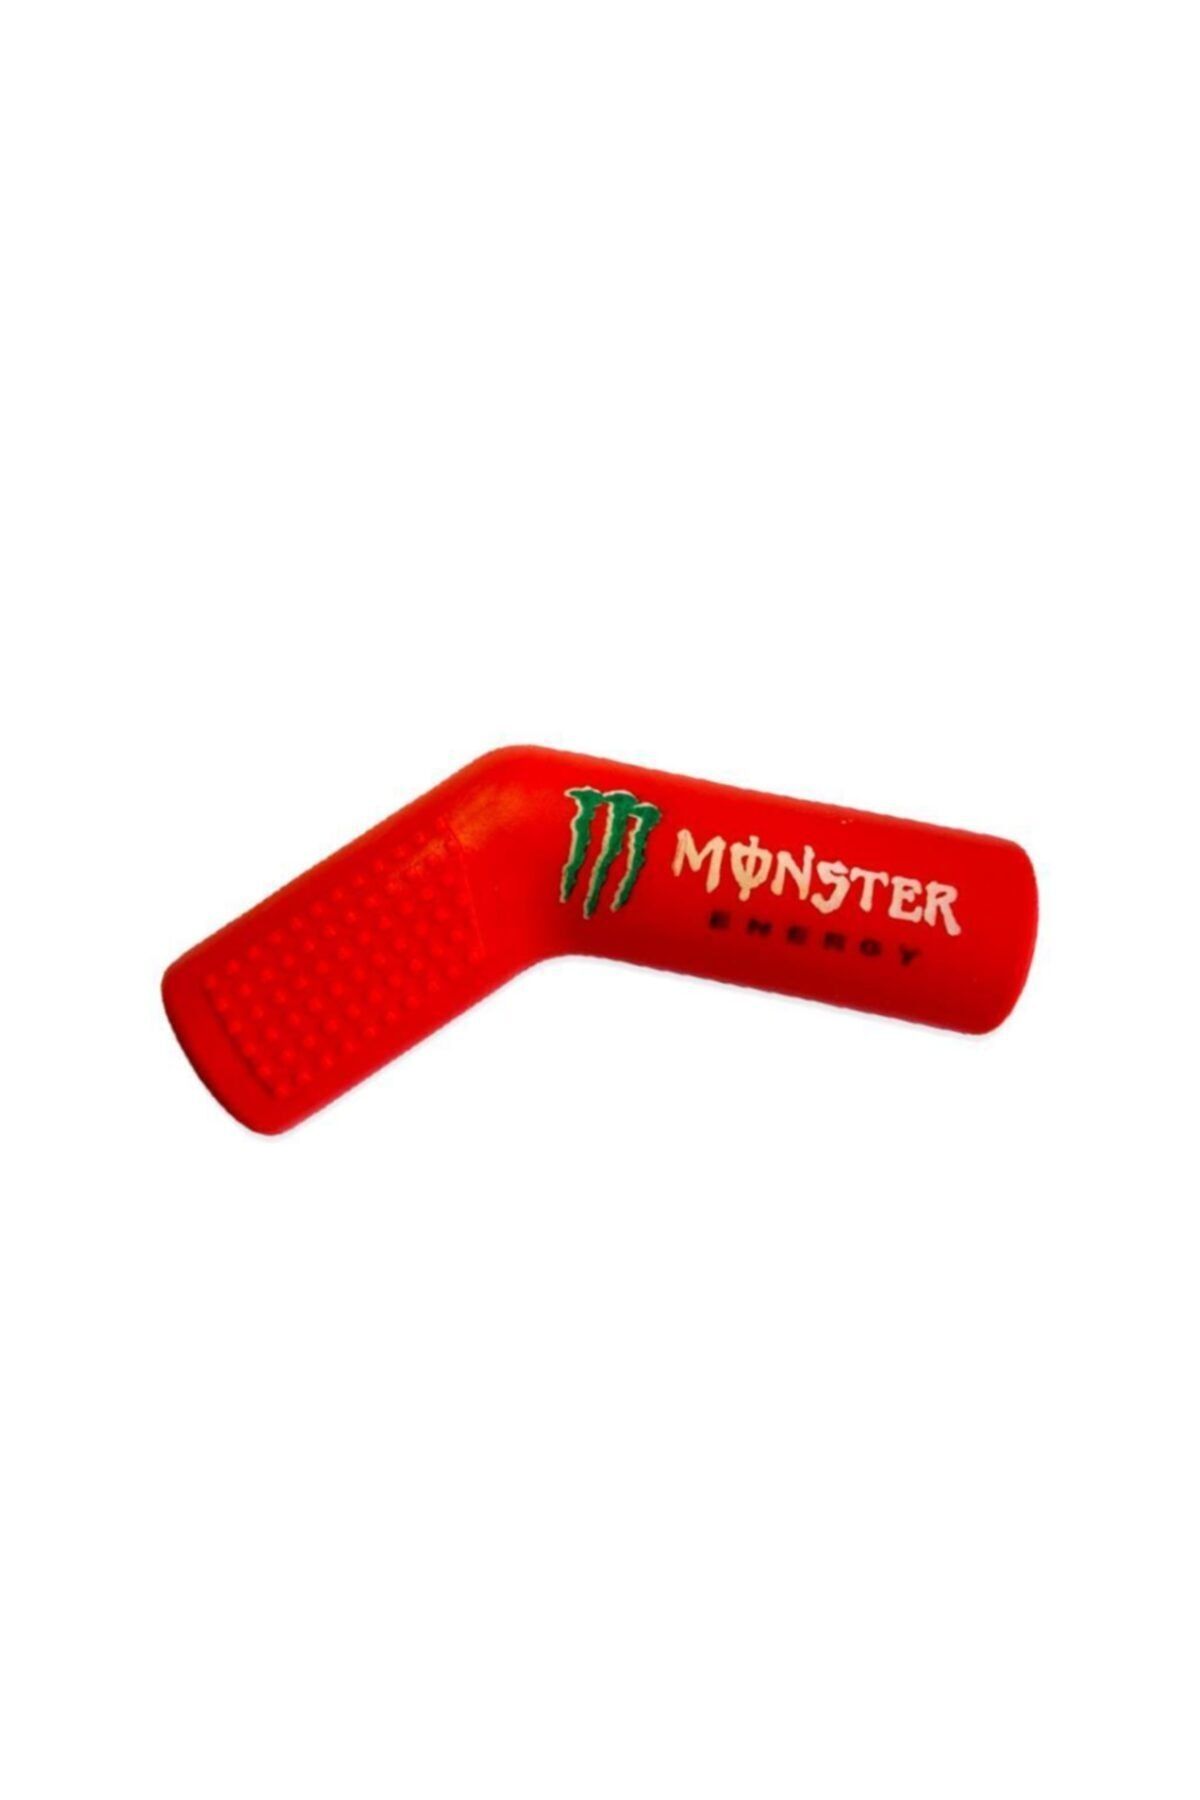 Knmaster Monster Motosiklet Evrensel Kırmızı Vites Çorabı Pedi